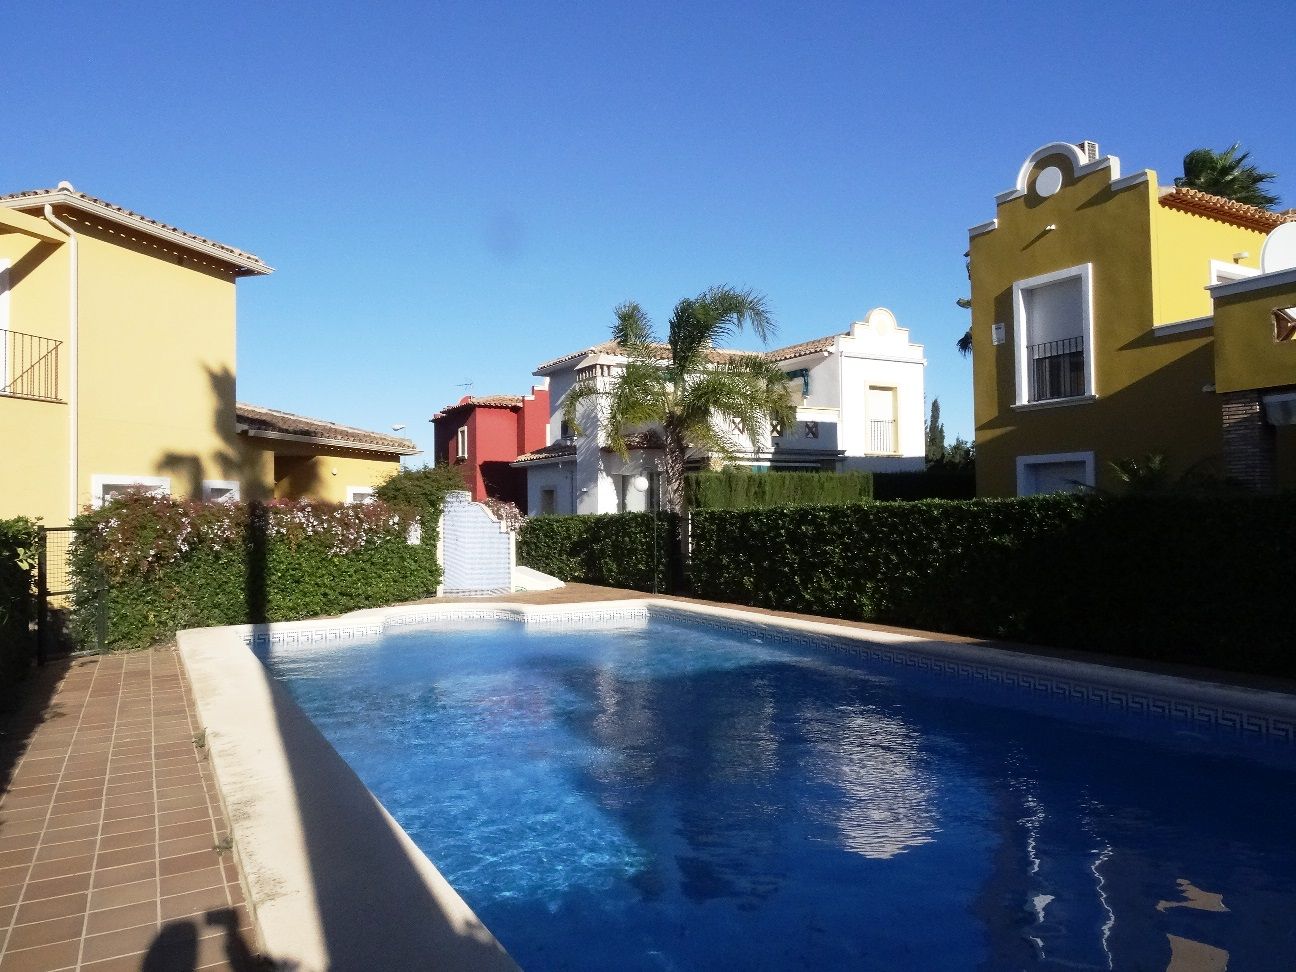 thumb Villa en urbanización con jardín y piscina en ubicación privilegiada